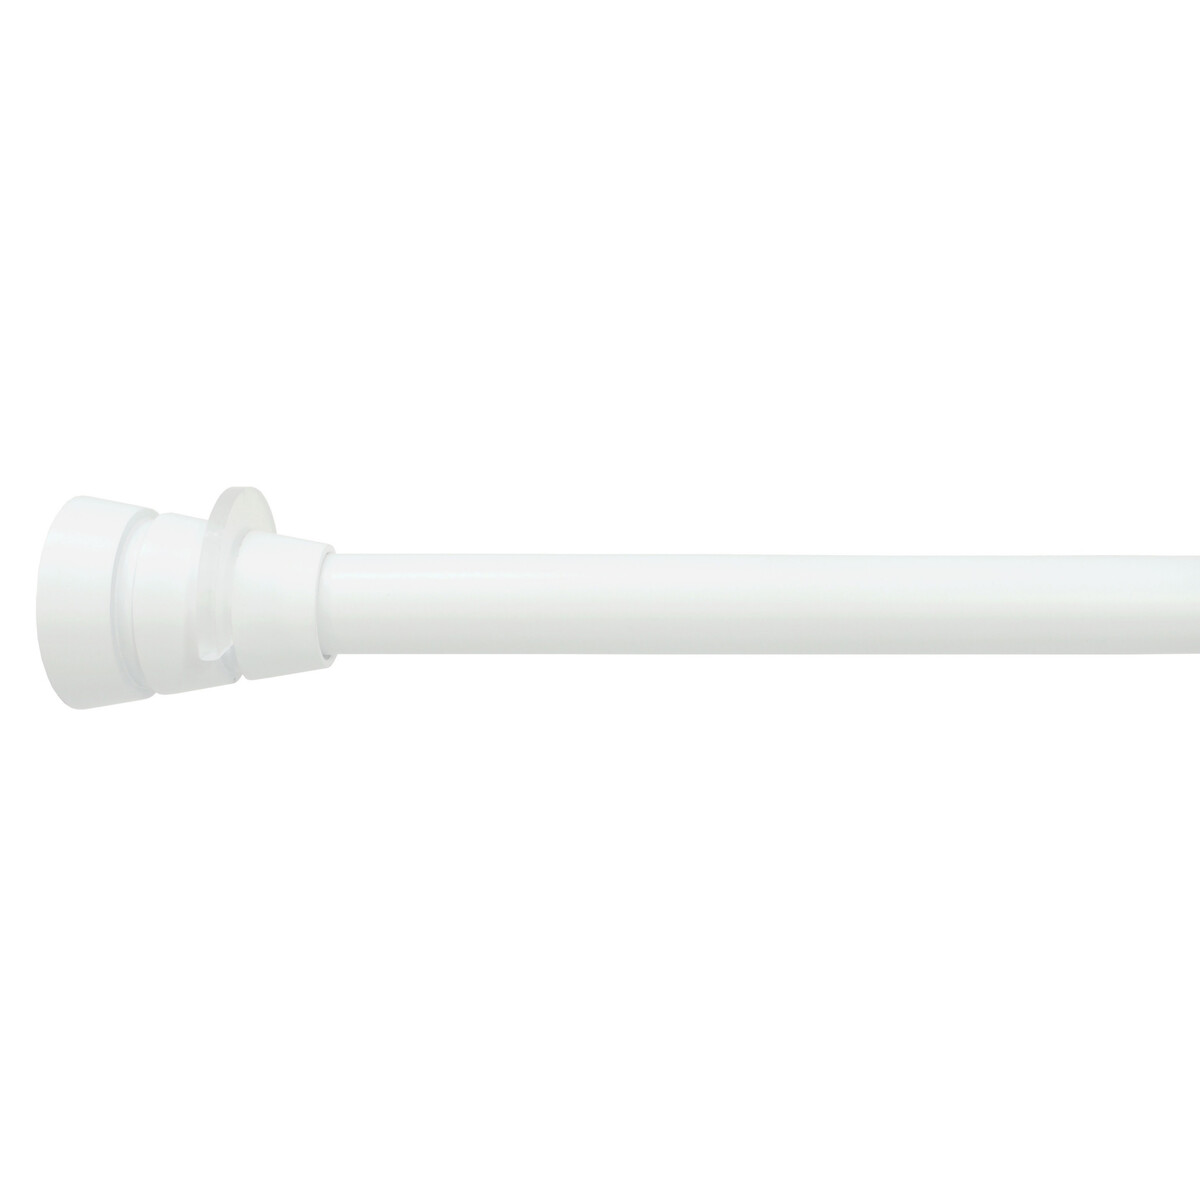 Barra cortina extensible (presión) white 61-91 cm